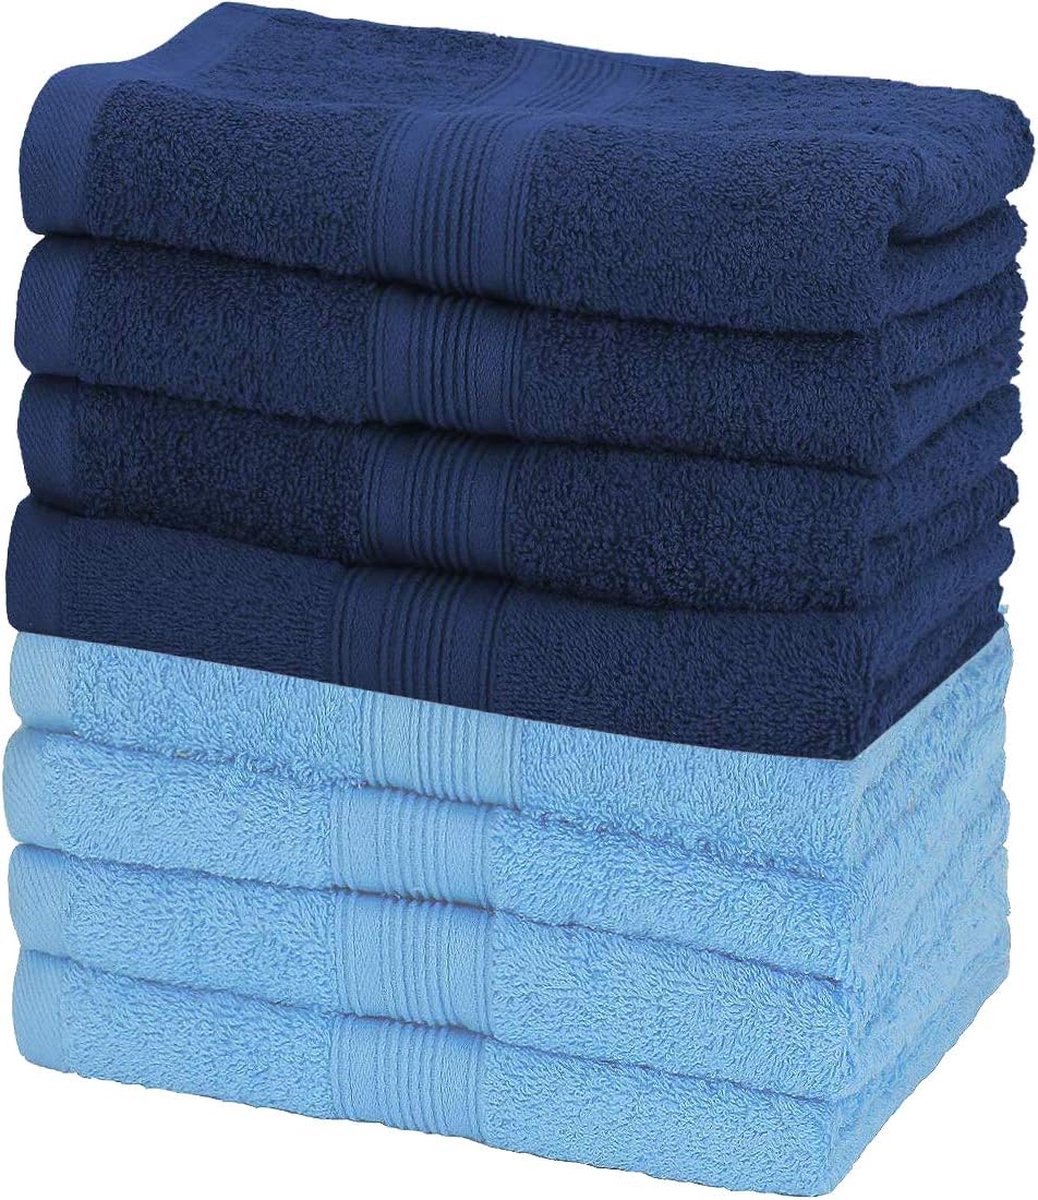 badstof handdoeken, 8-pack, 50 x 100 cm, 100% katoen (lichtblauw/marineblauw)